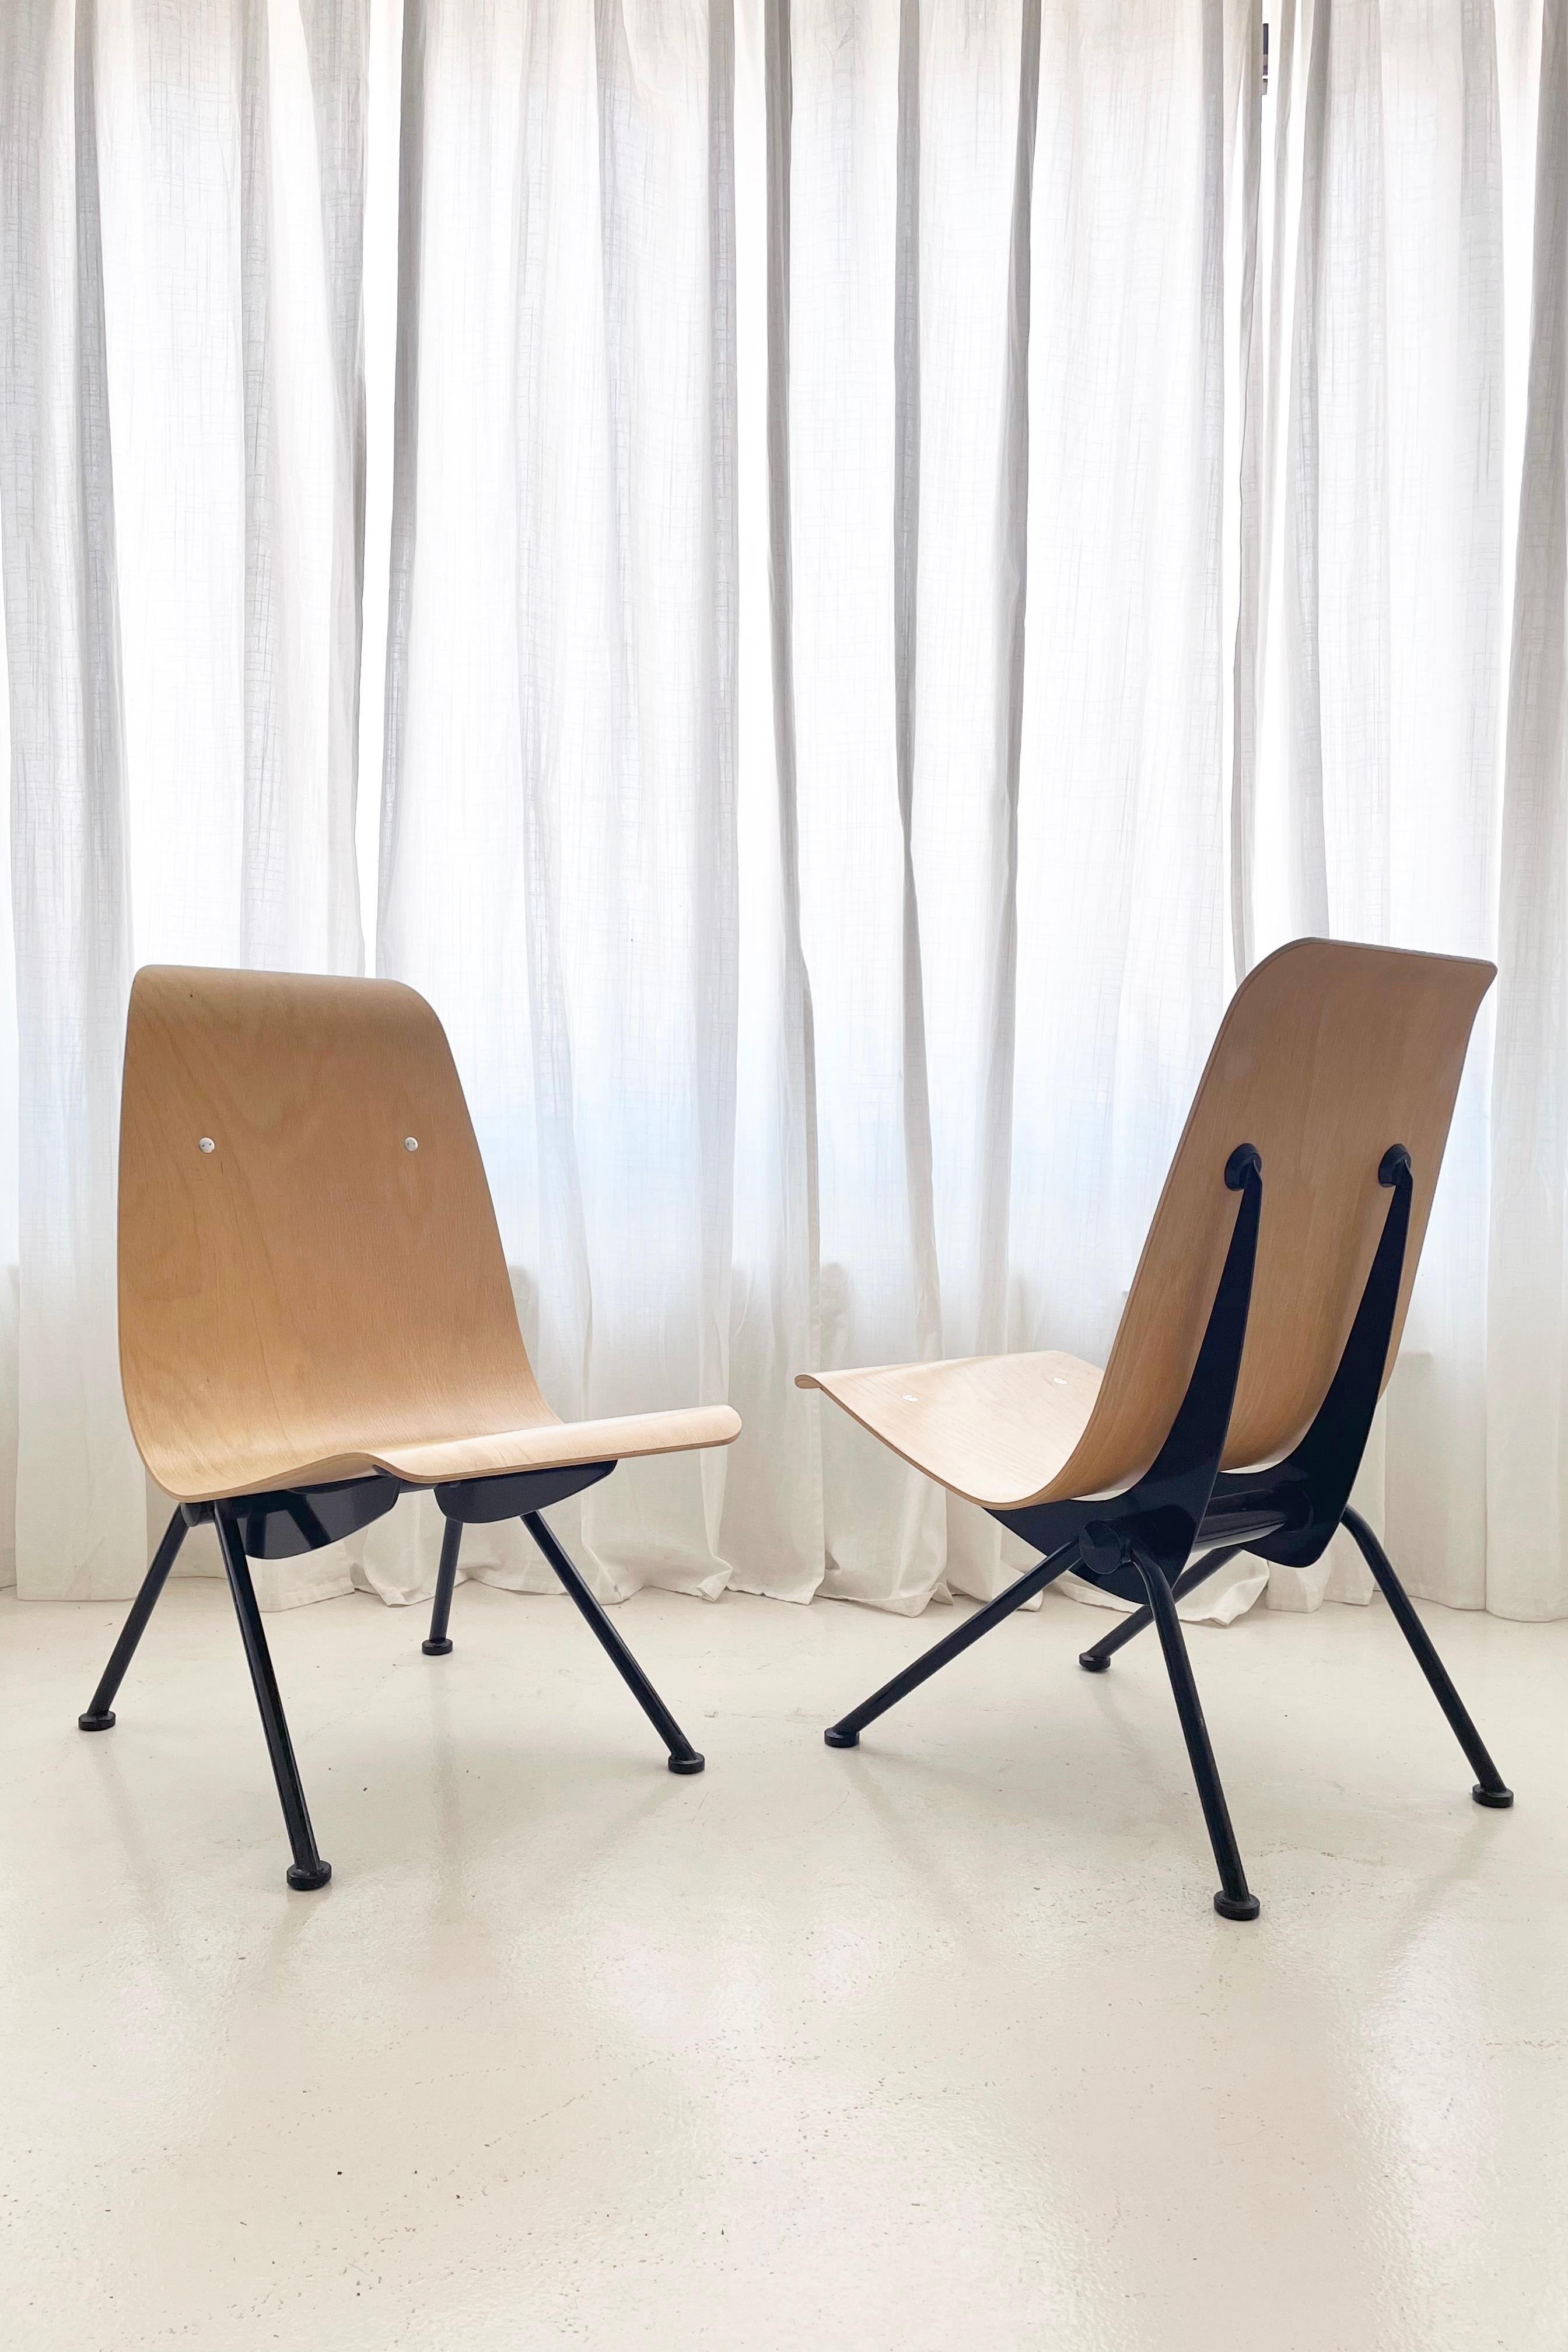 Ces chaises sont un ensemble très recherché de chaises Antoni conçues à l'origine en 1950 par l'architecte français Jean Prouvé et commercialisées sous licence par Vitra USA au nom de la famille Prouvé en 2002.

Les chaises ont été rééditées en